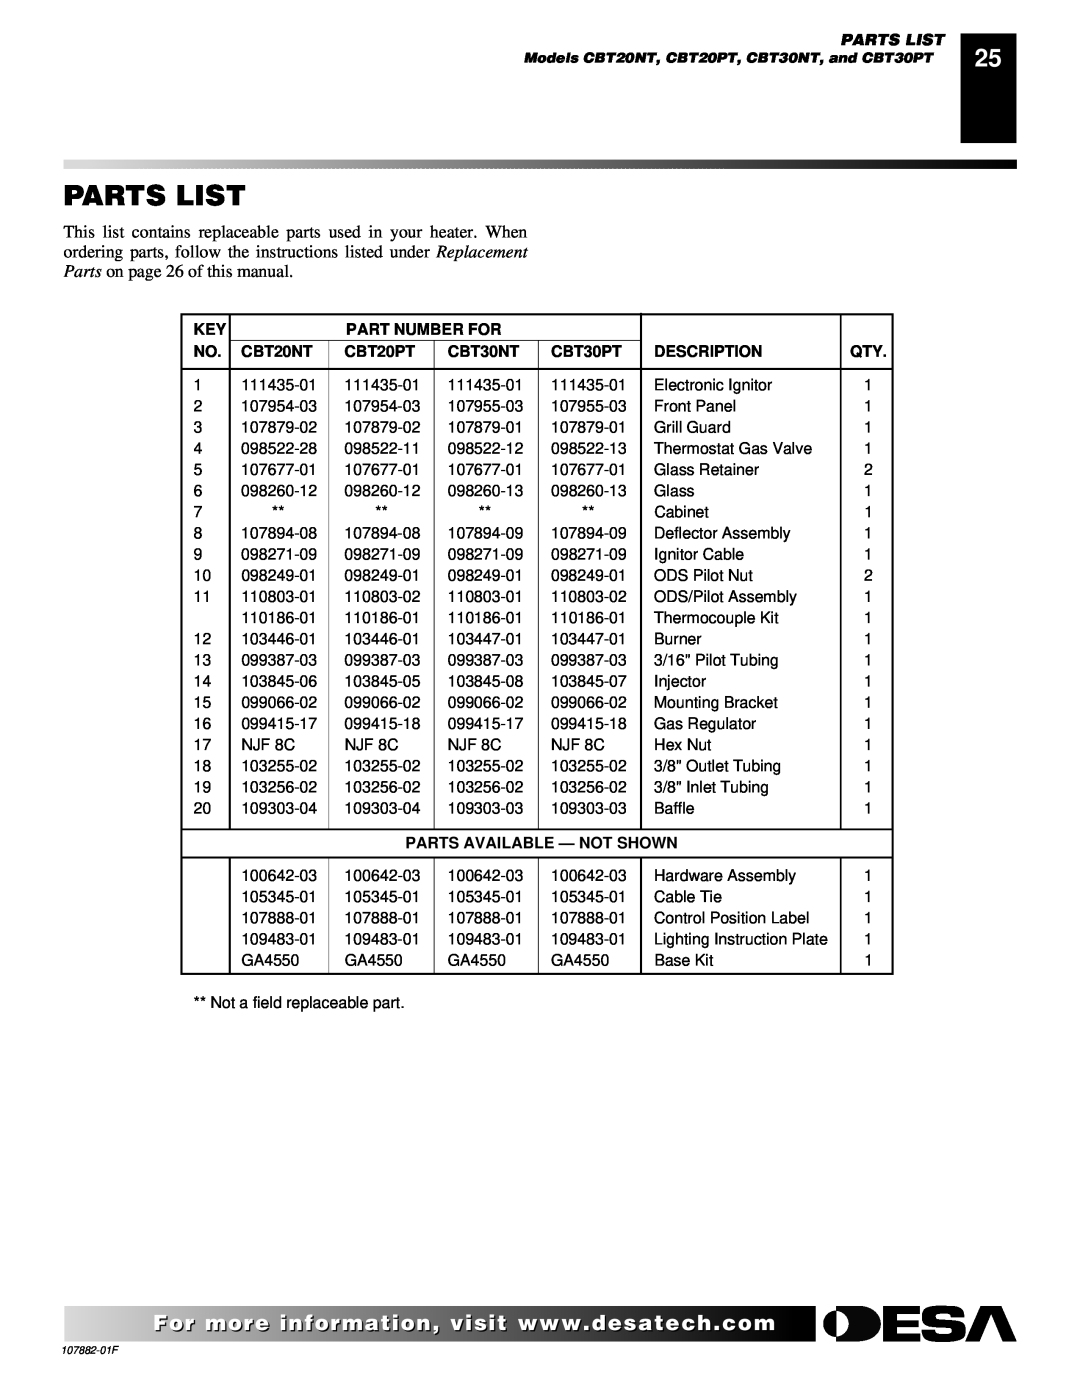 Desa CBN20 Parts List, Part Number For, CBT20NT, CBT20PT, CBT30NT, CBT30PT, Description, Parts Available - Not Shown 